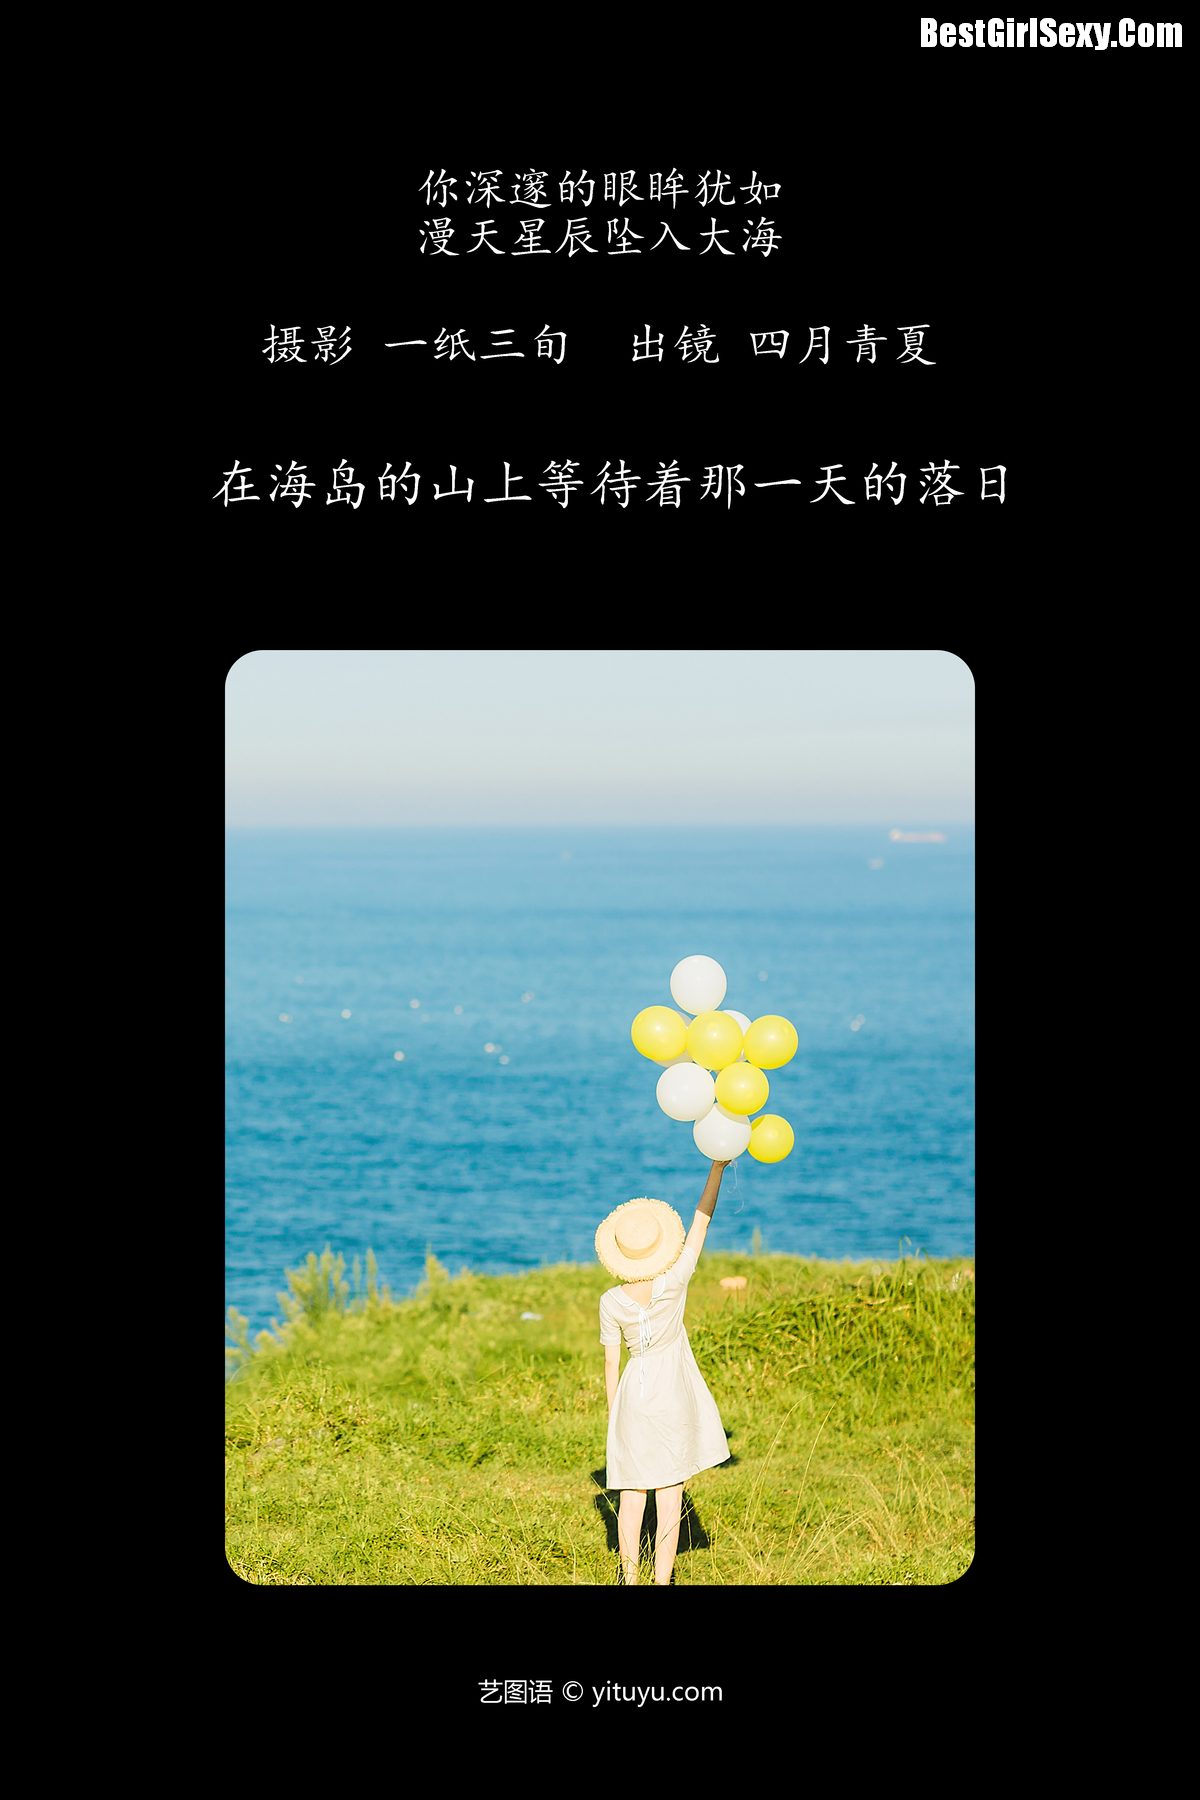 YiTuYu艺图语 Vol 4076 Si Yue Qing Xia 0002 2491043418.jpg